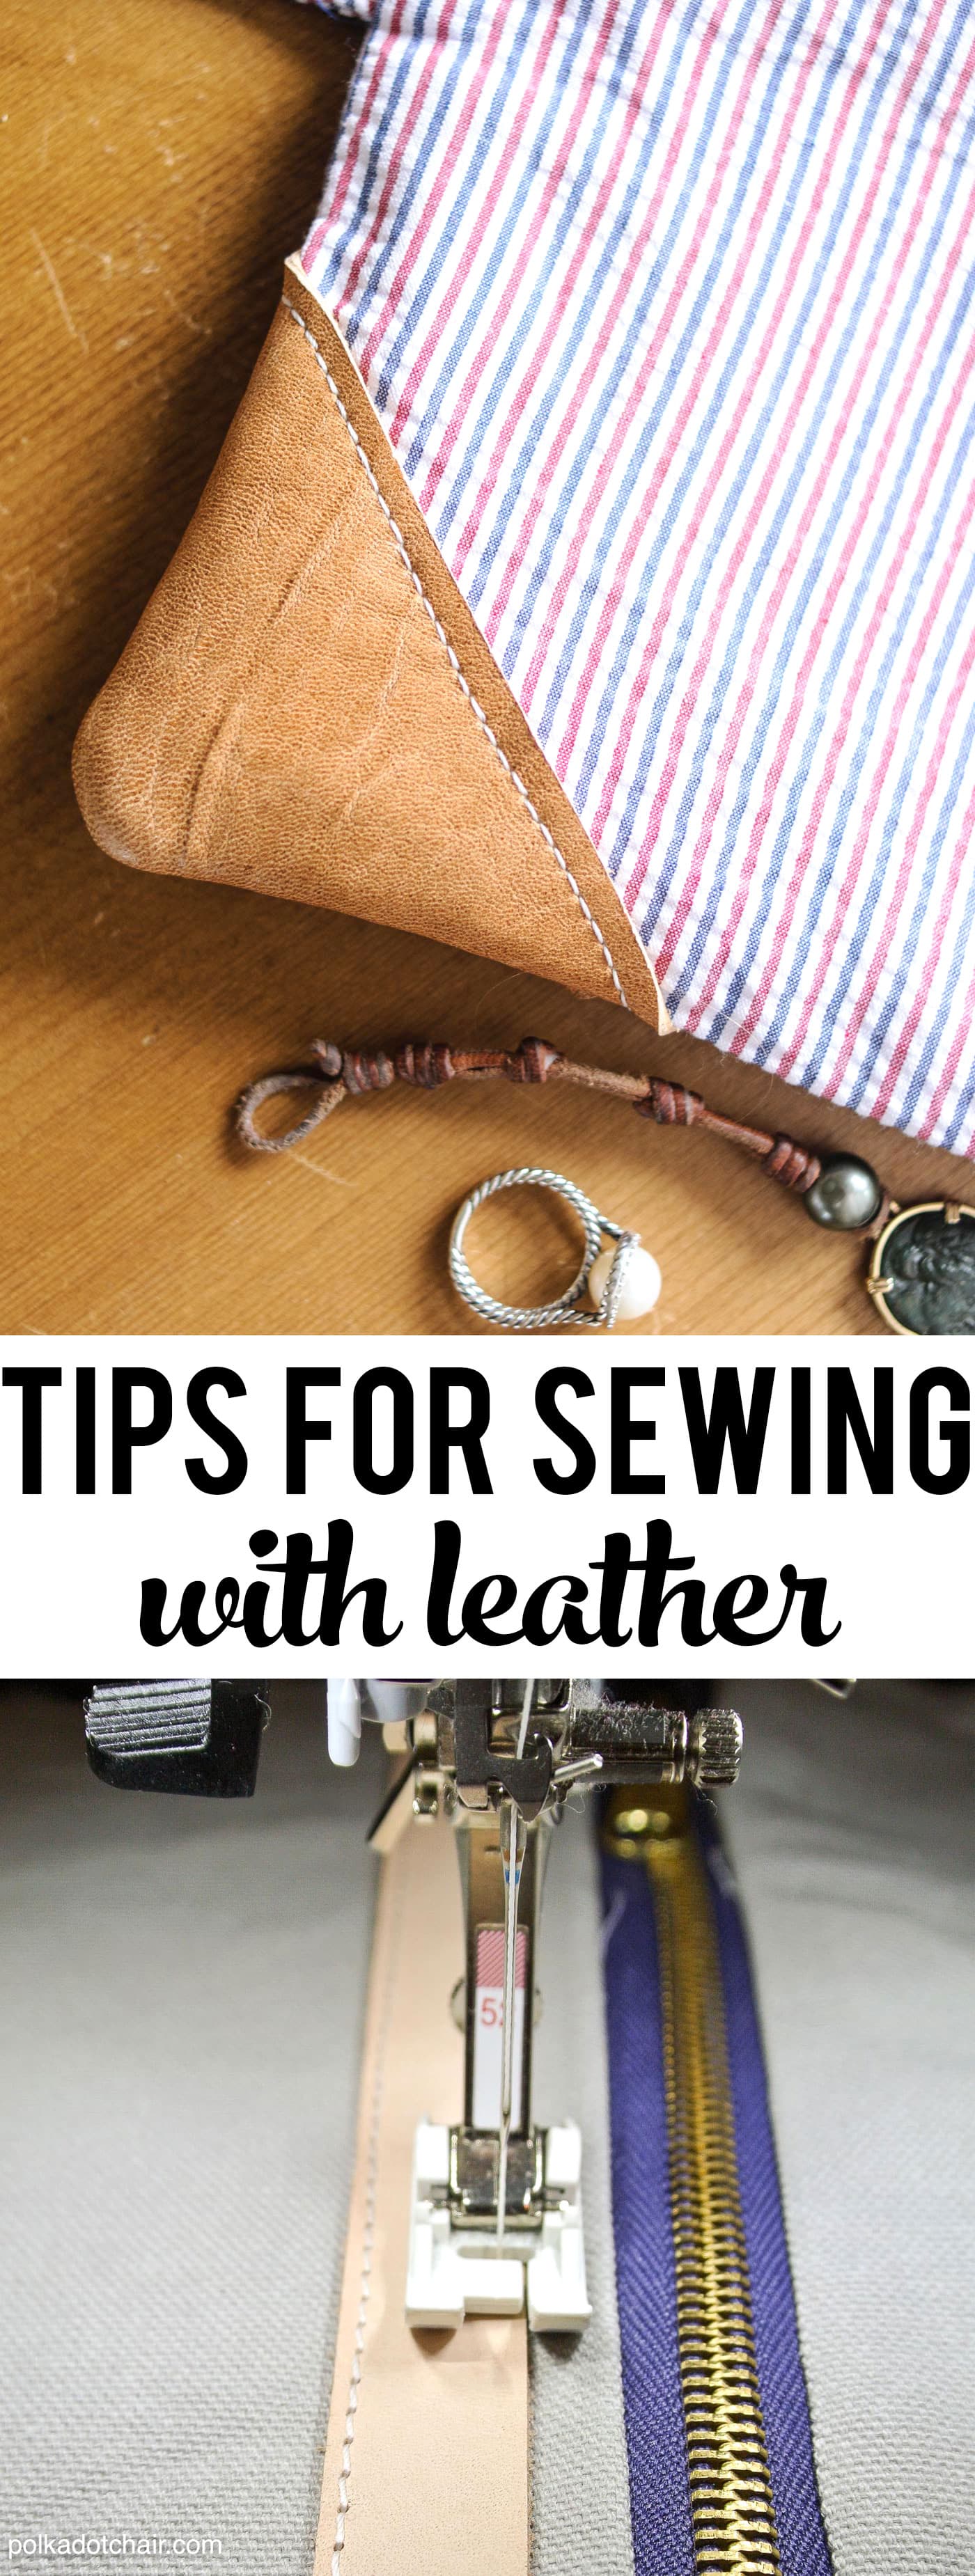 Trucs et astuces simples pour vous aider à commencer à coudre du cuir sur votre machine à coudre domestique.